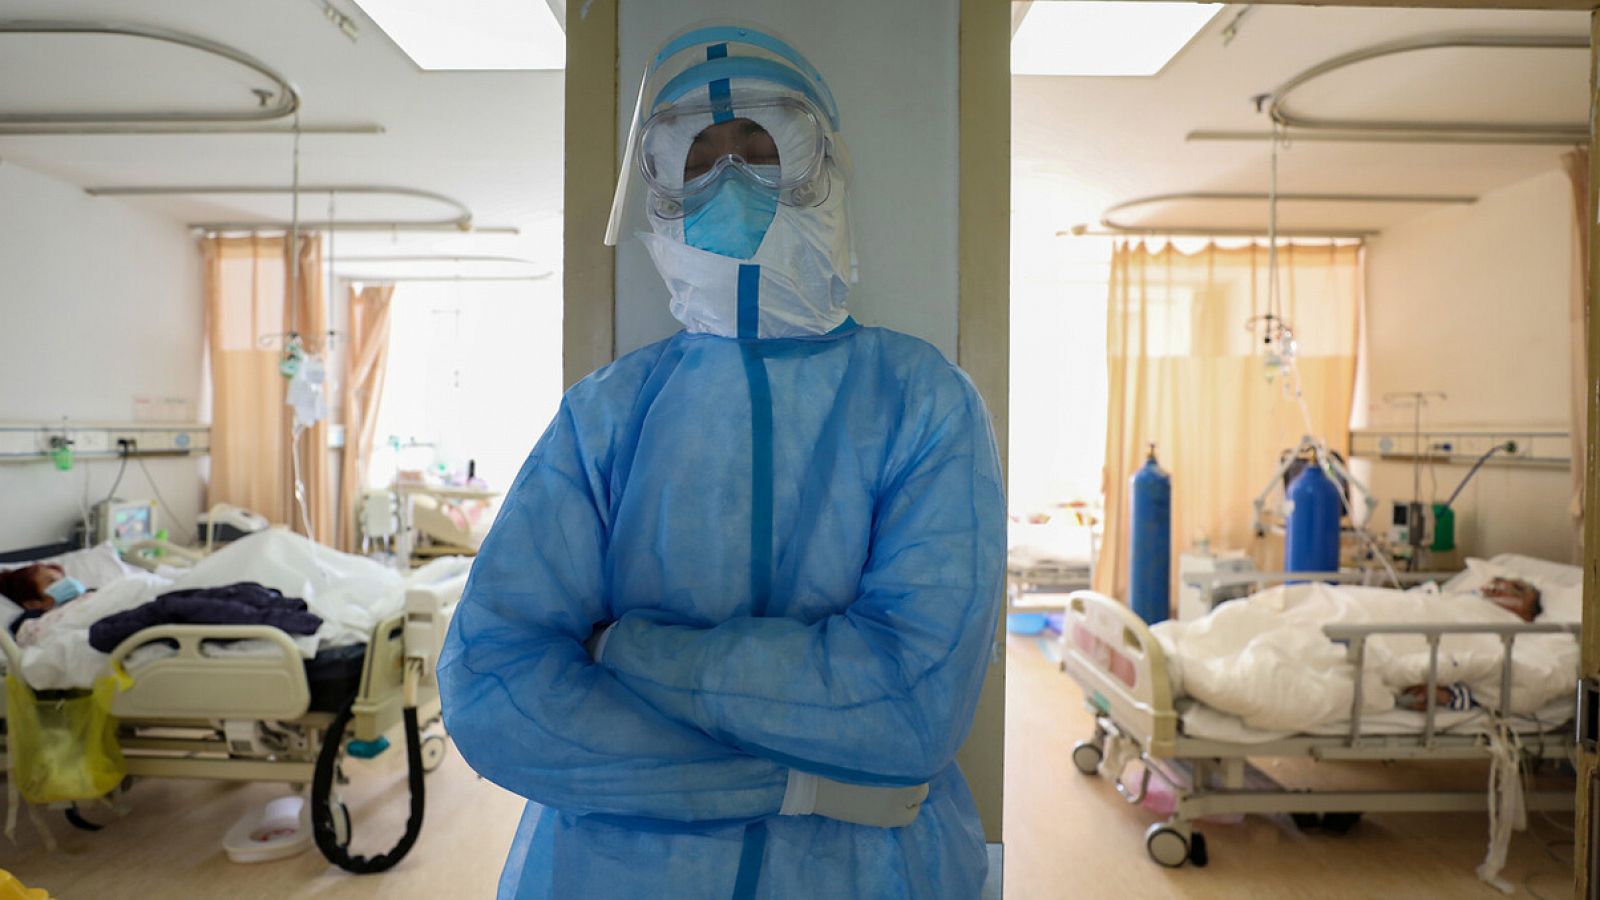 Un trabajador sanitario se toma un respiro mientras atiende a pacientes de coronavirus COVID-19 en el hospital de la Cruz Roja en Wuhan, provincia de Hubei, China. China Daily via REUTERS